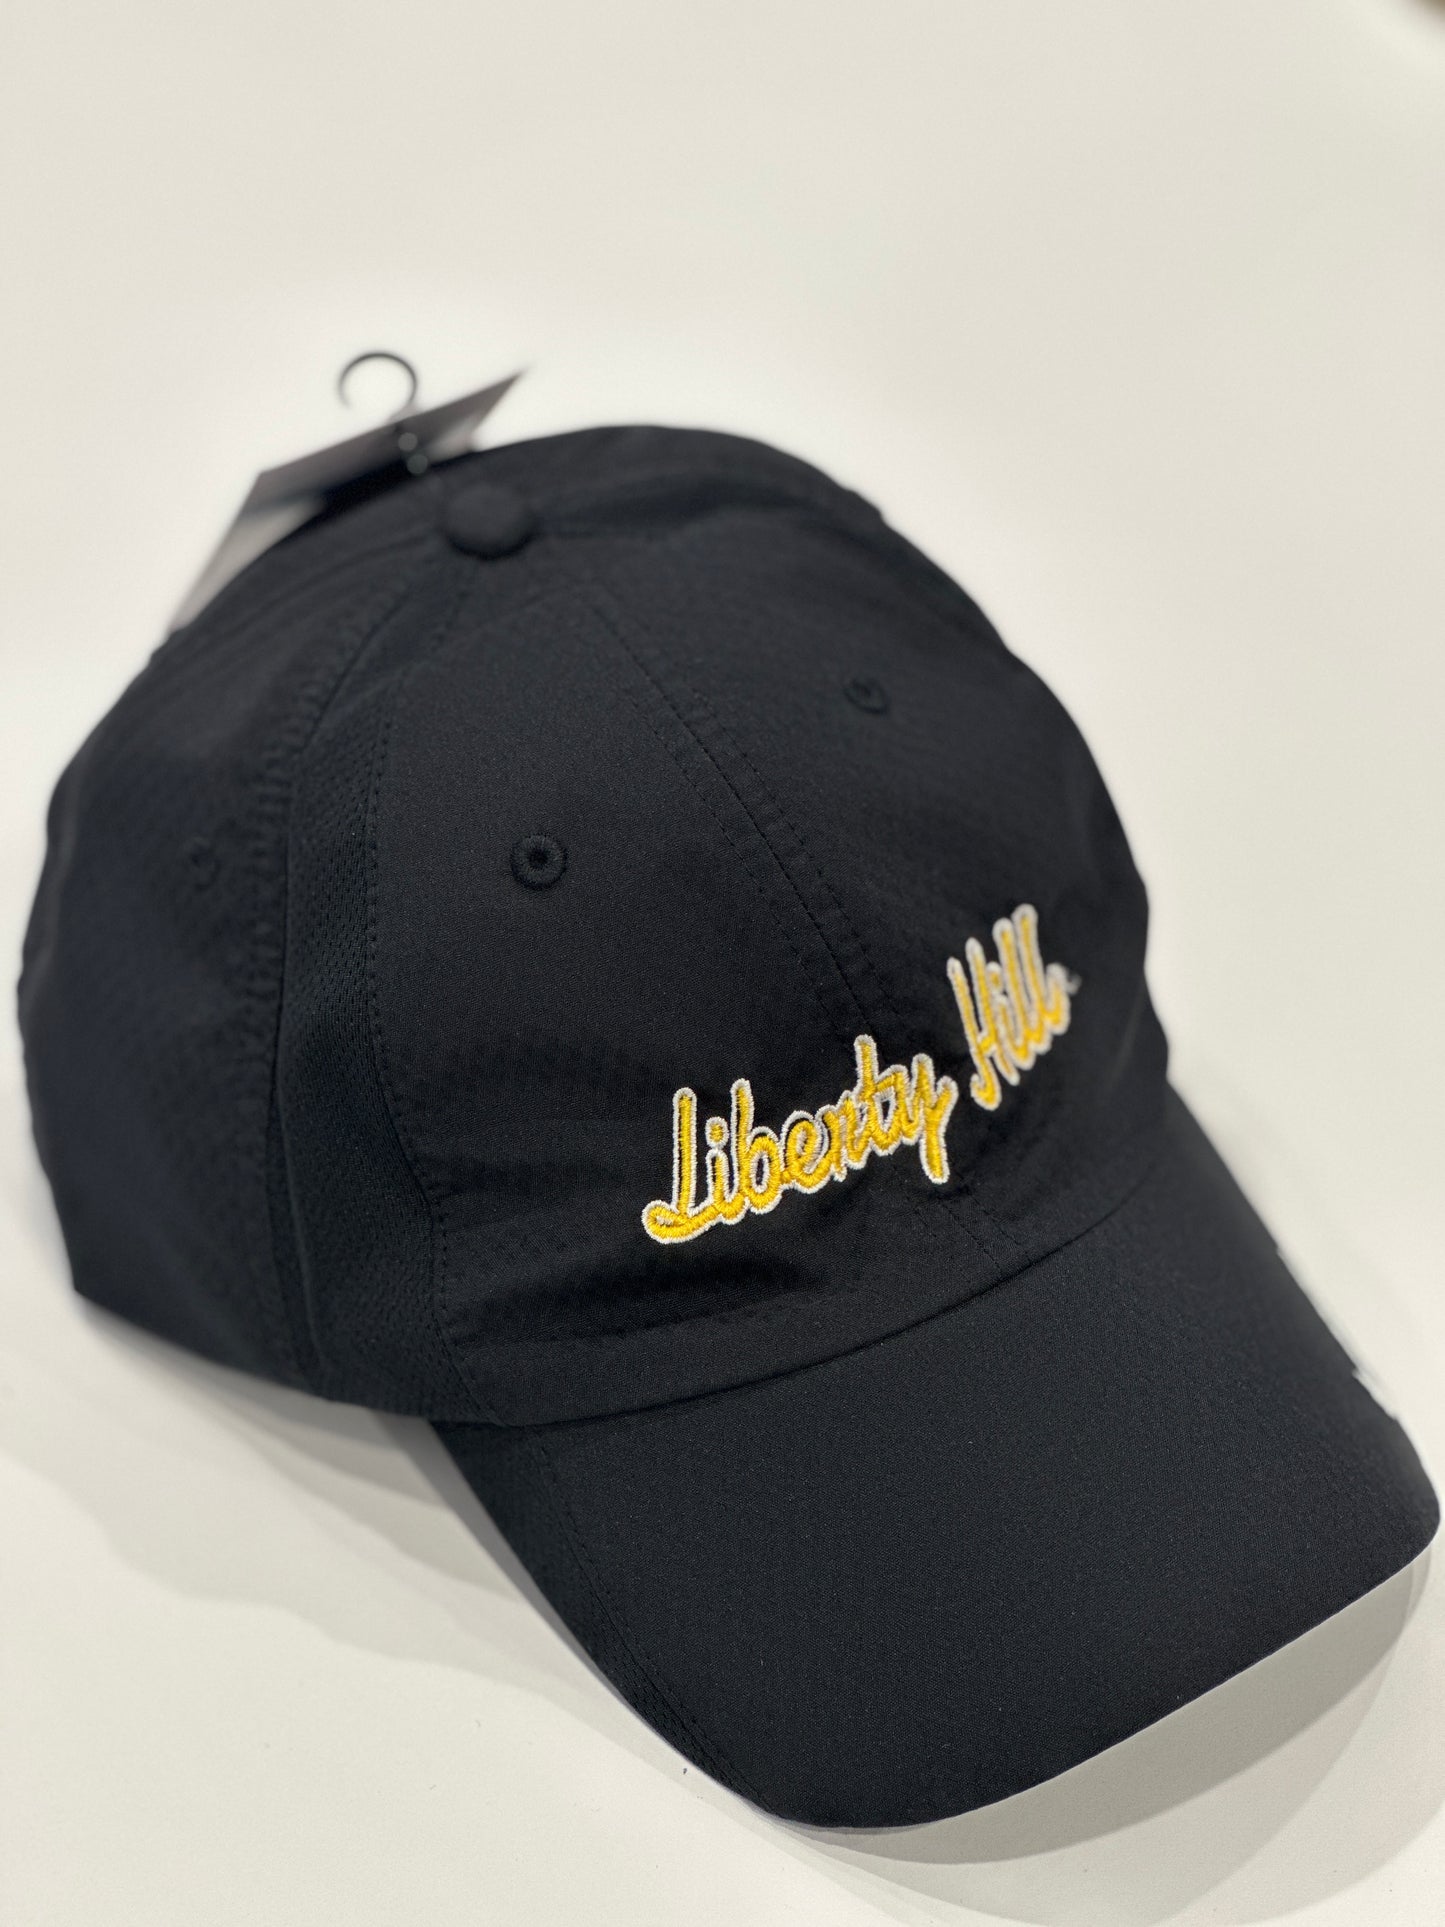 Nike Liberty Hill Black Club Cap Golf Hat M/L